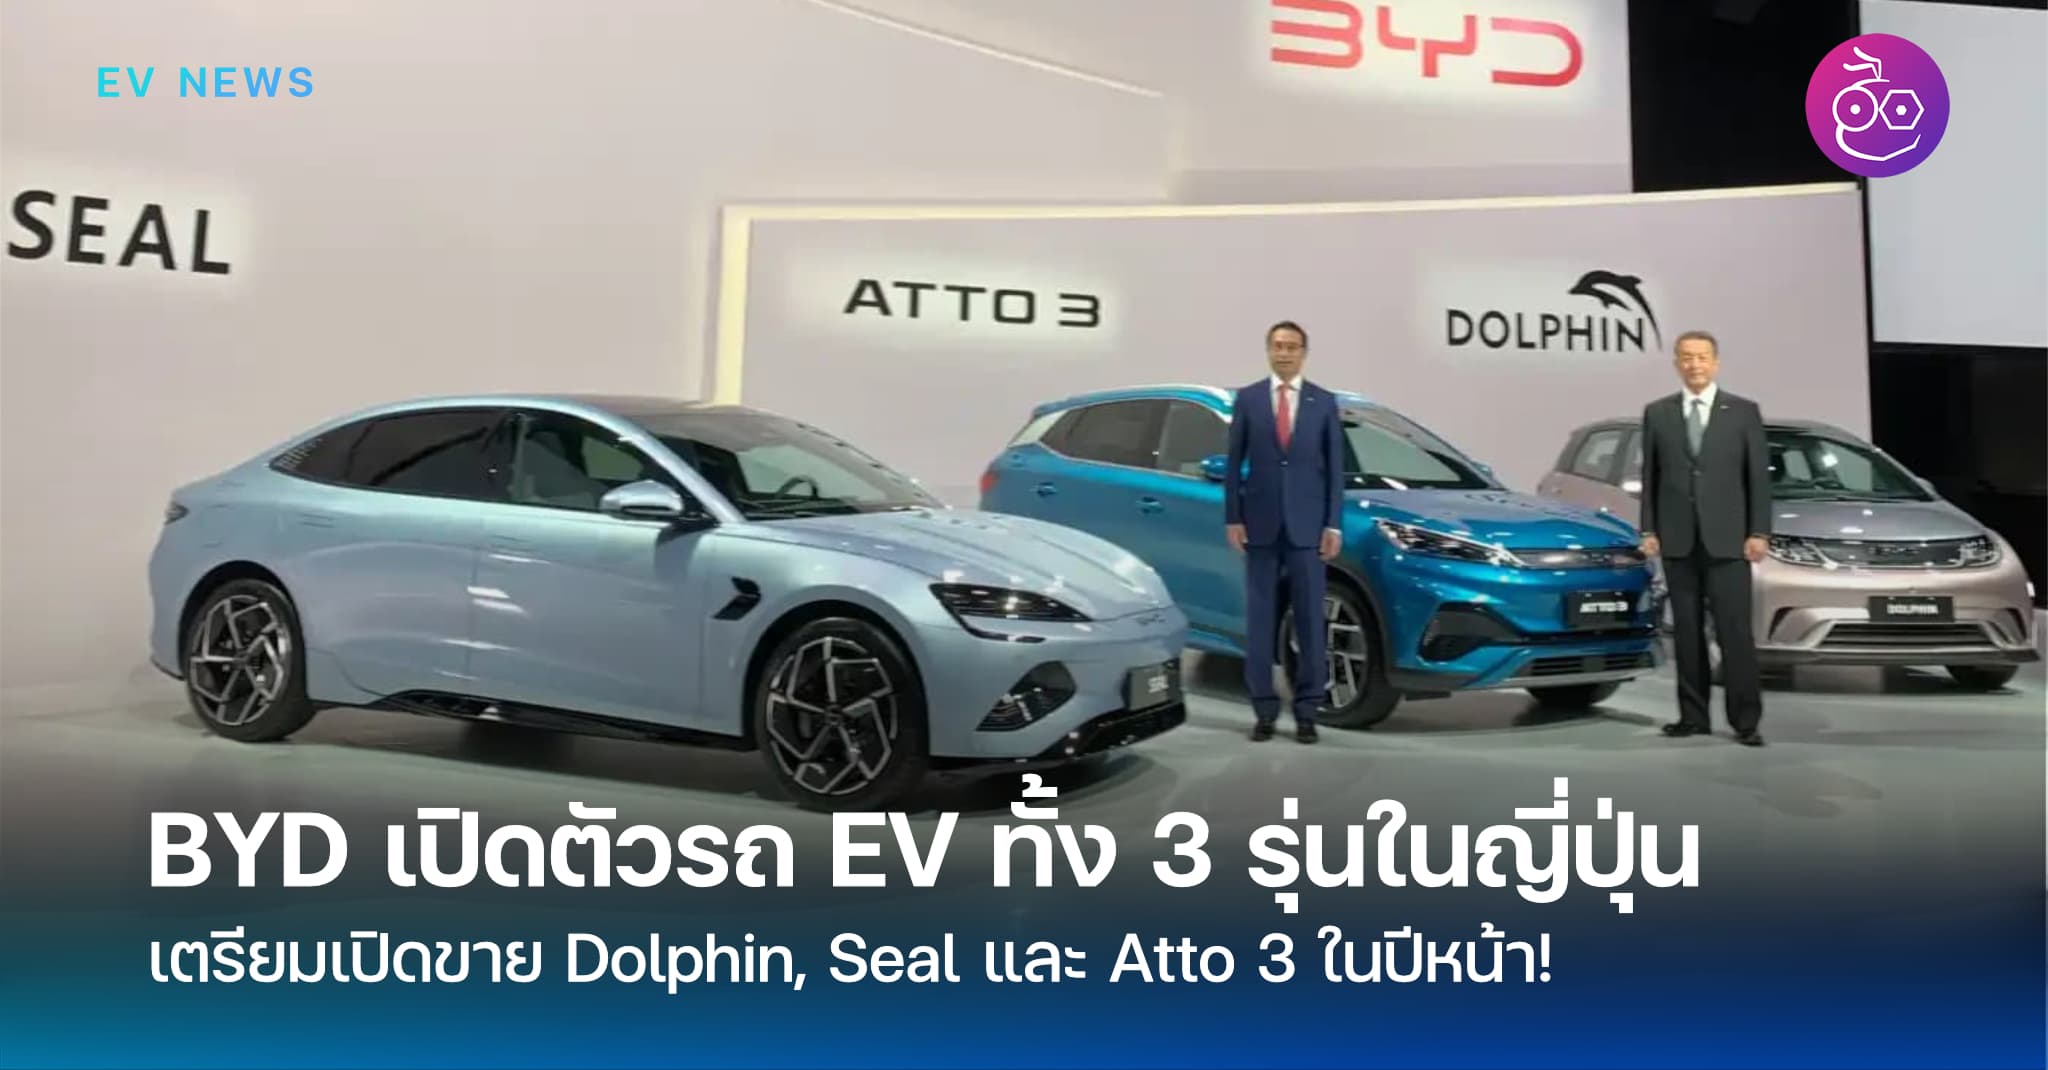 BYDは日本でドルフィン、シール、アト3の3台の電気自動車を発売し、2023年に発売します。